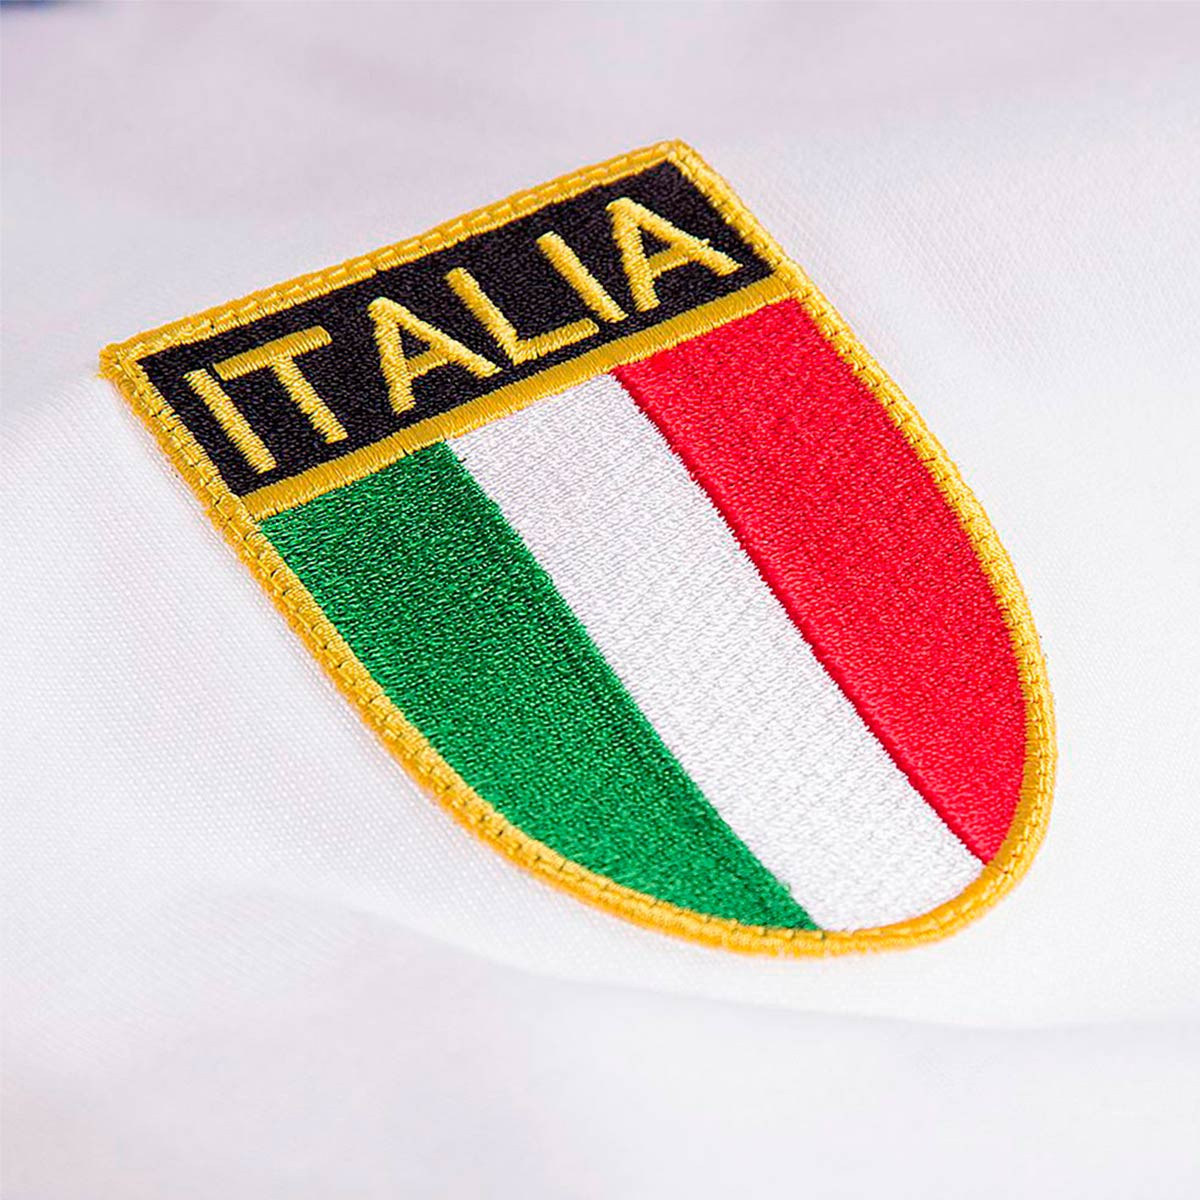 Italy Retro Shirt